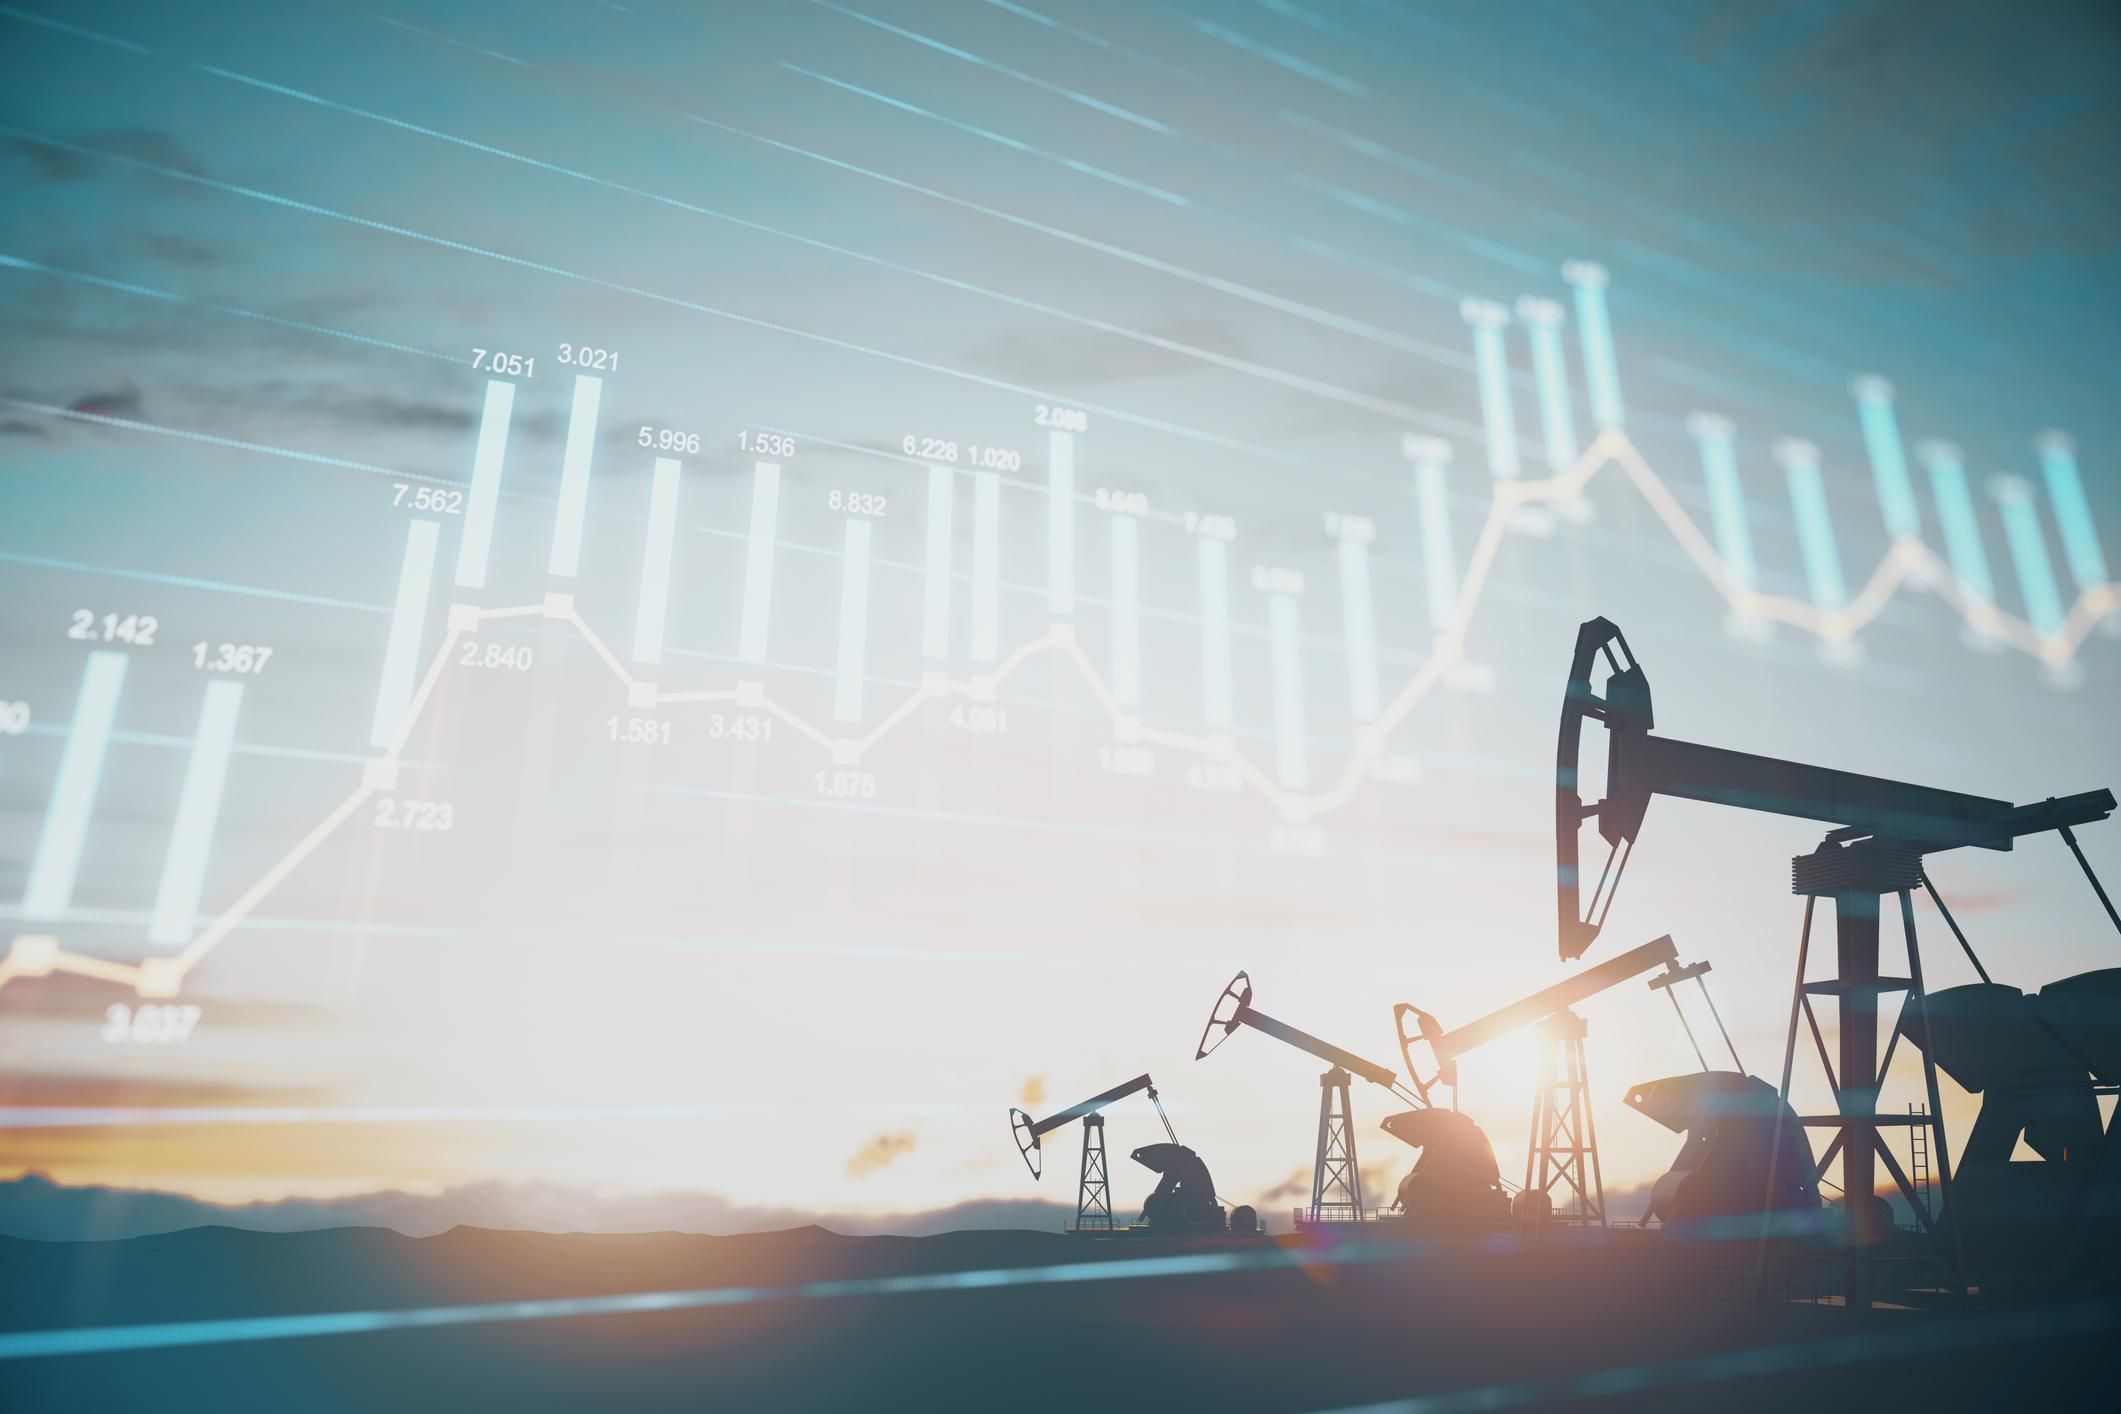 Актуальная динамика на рынке нефти по состоянию на 3 августа 2022 года